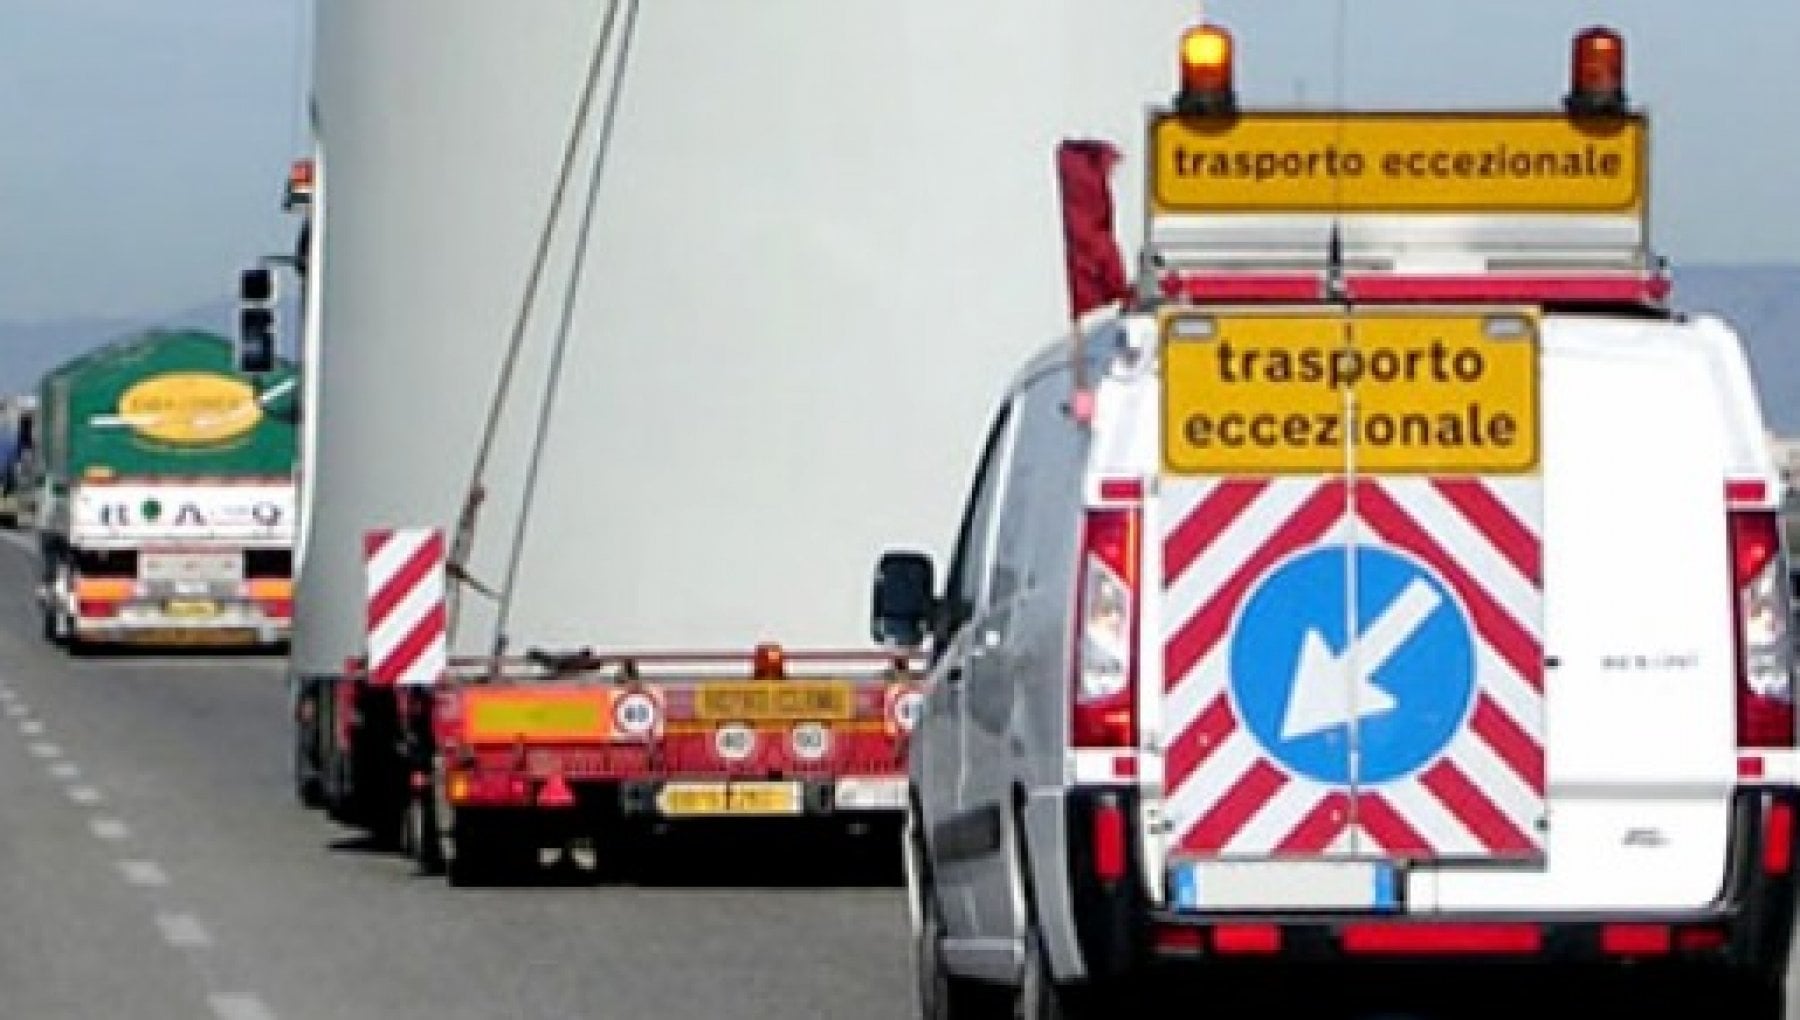 Nuove norme sui trasporti eccezionali, Mondini: "Nuova mazzata per le aziende liguri"